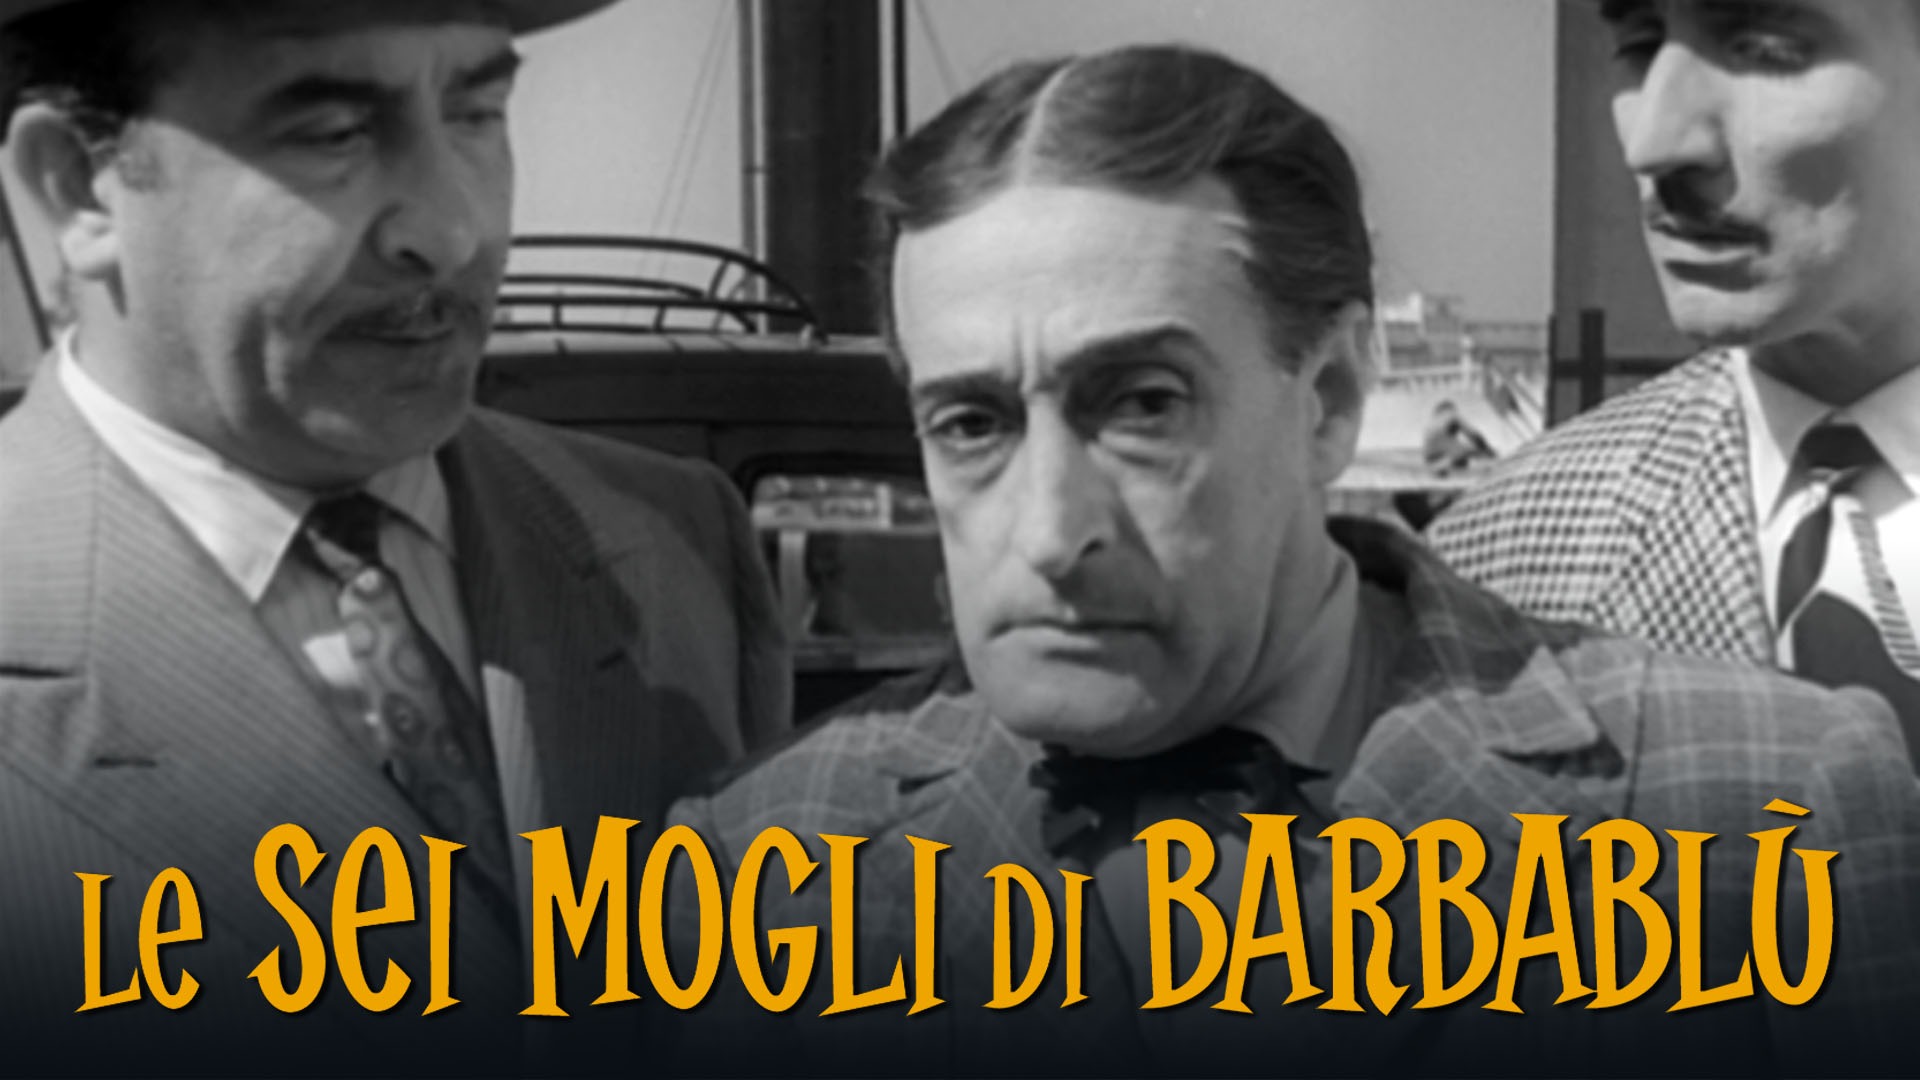 Le sei mogli di Barbablù - Film (1950)